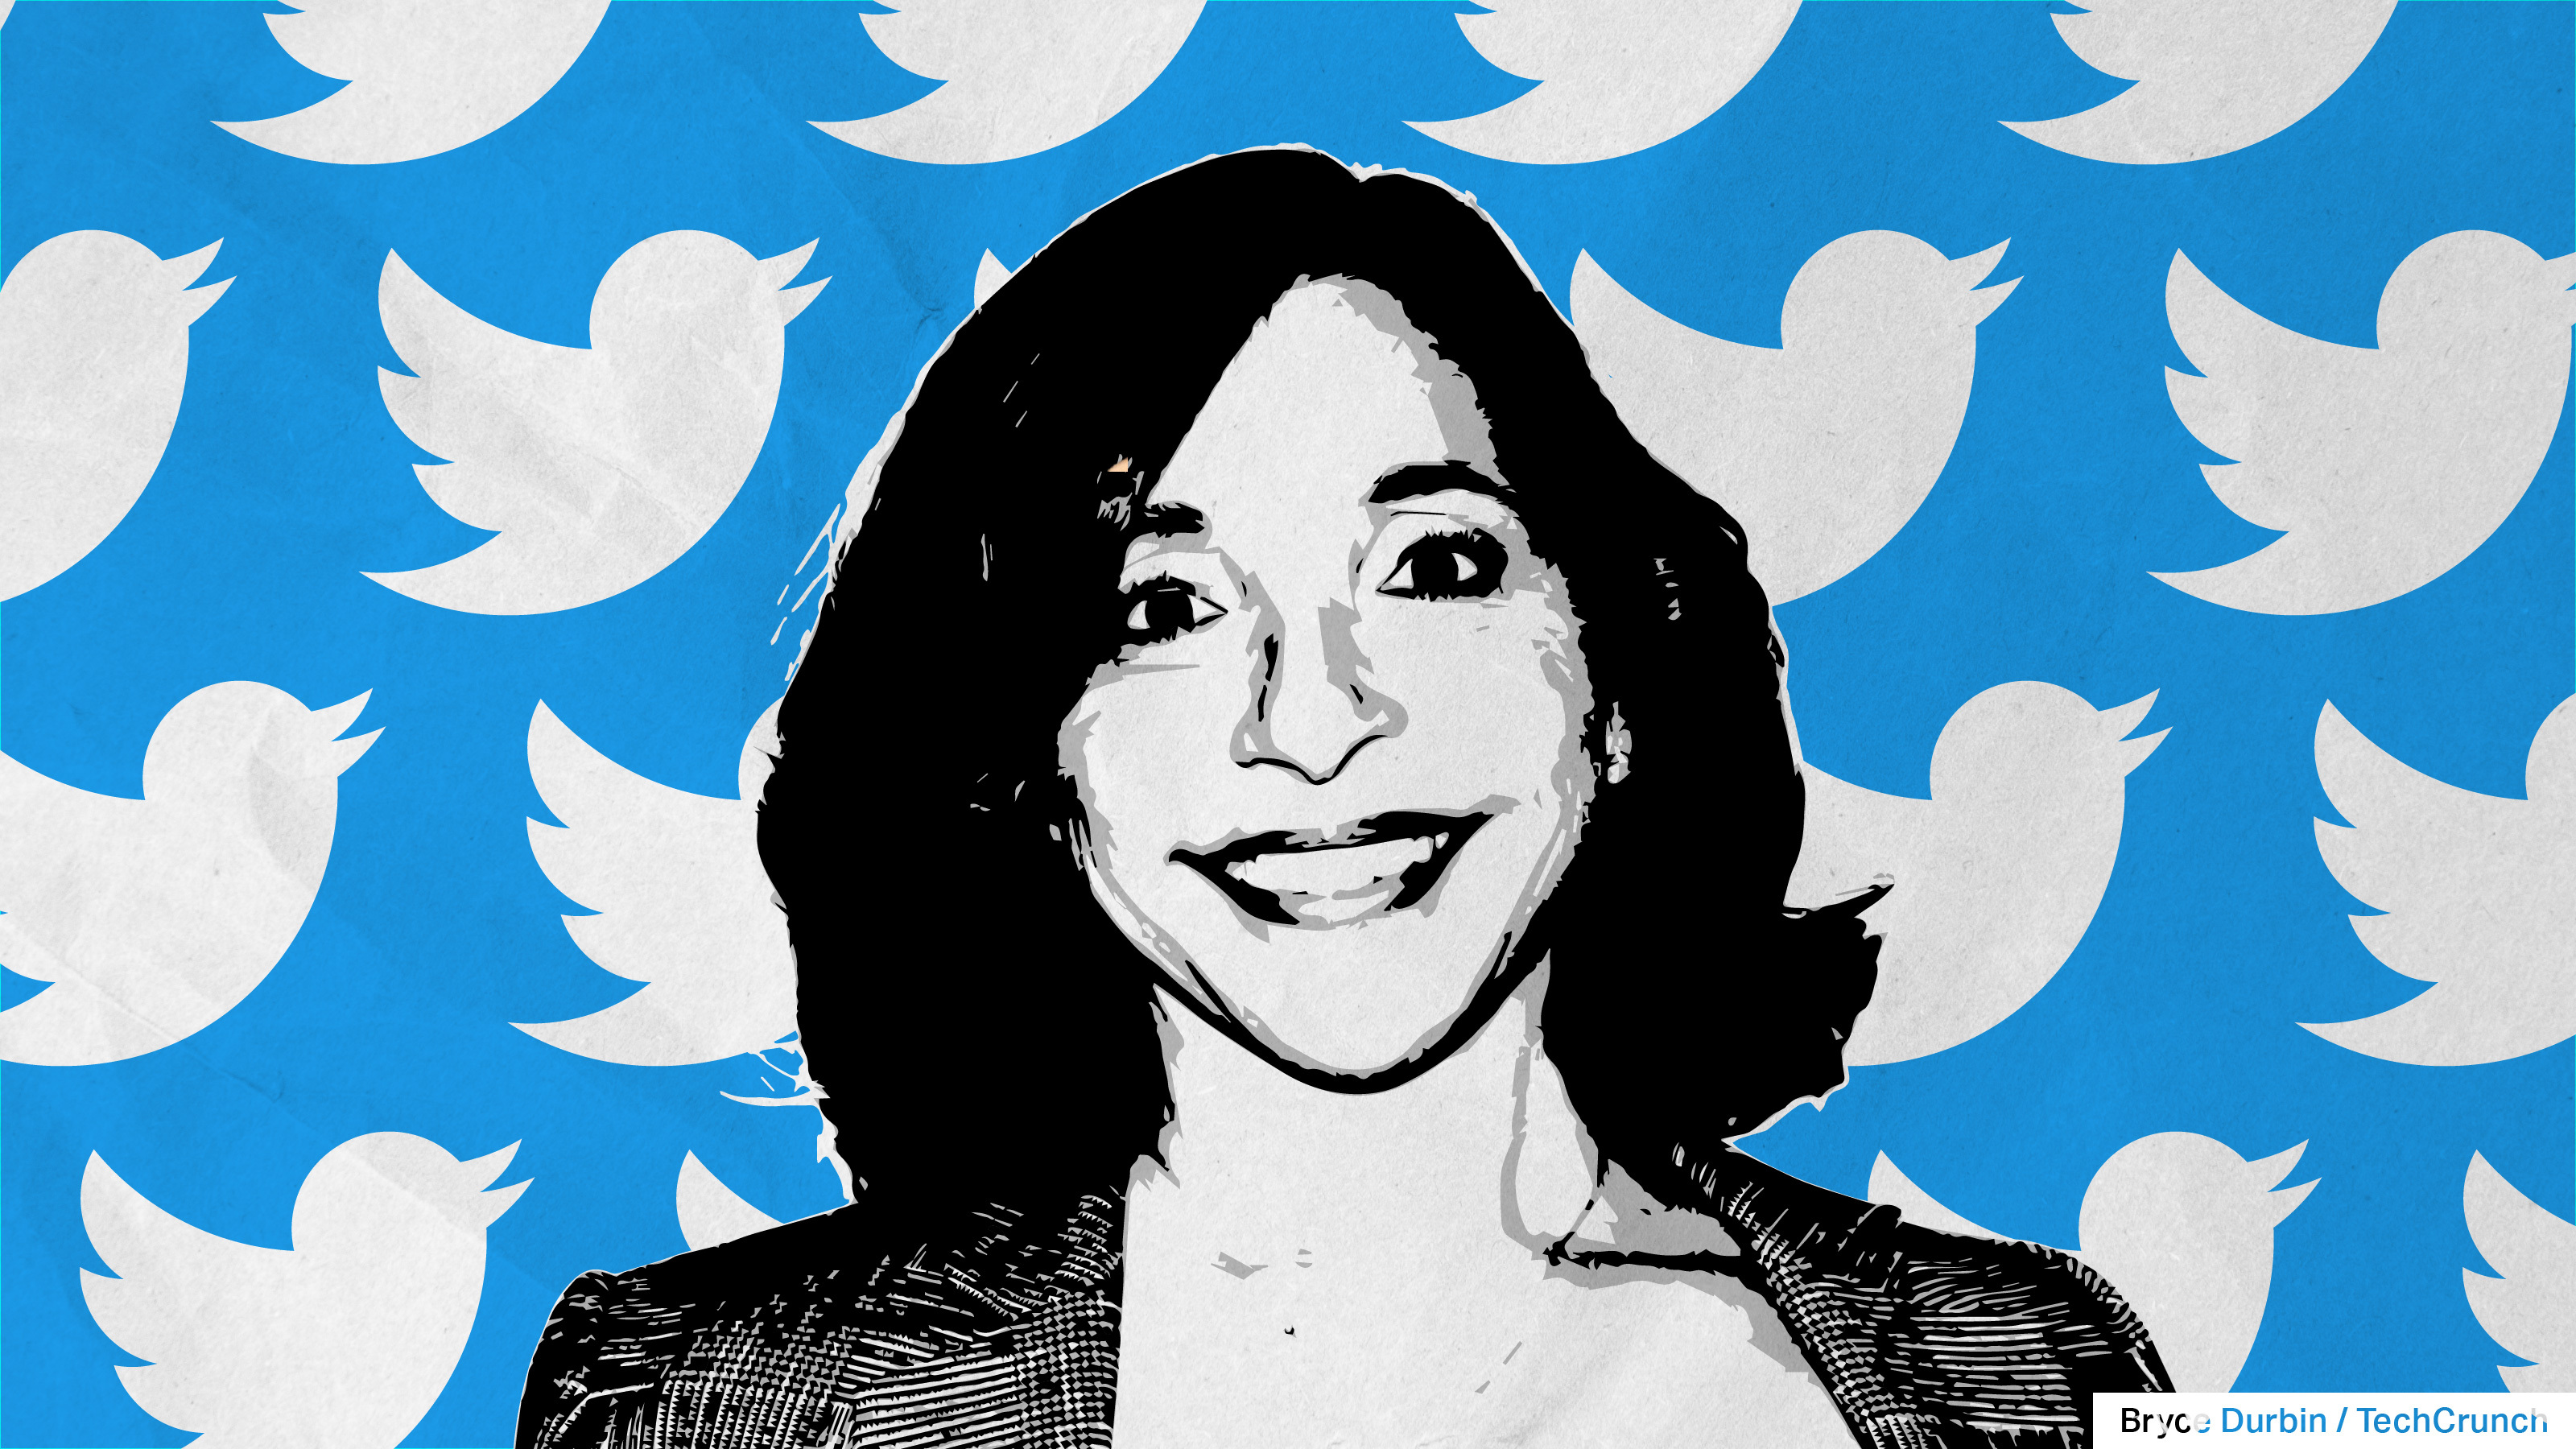 Imagen de Linda Yaccarino con los Twitter Birds de fondo, representando al nuevo CEO de Twitter